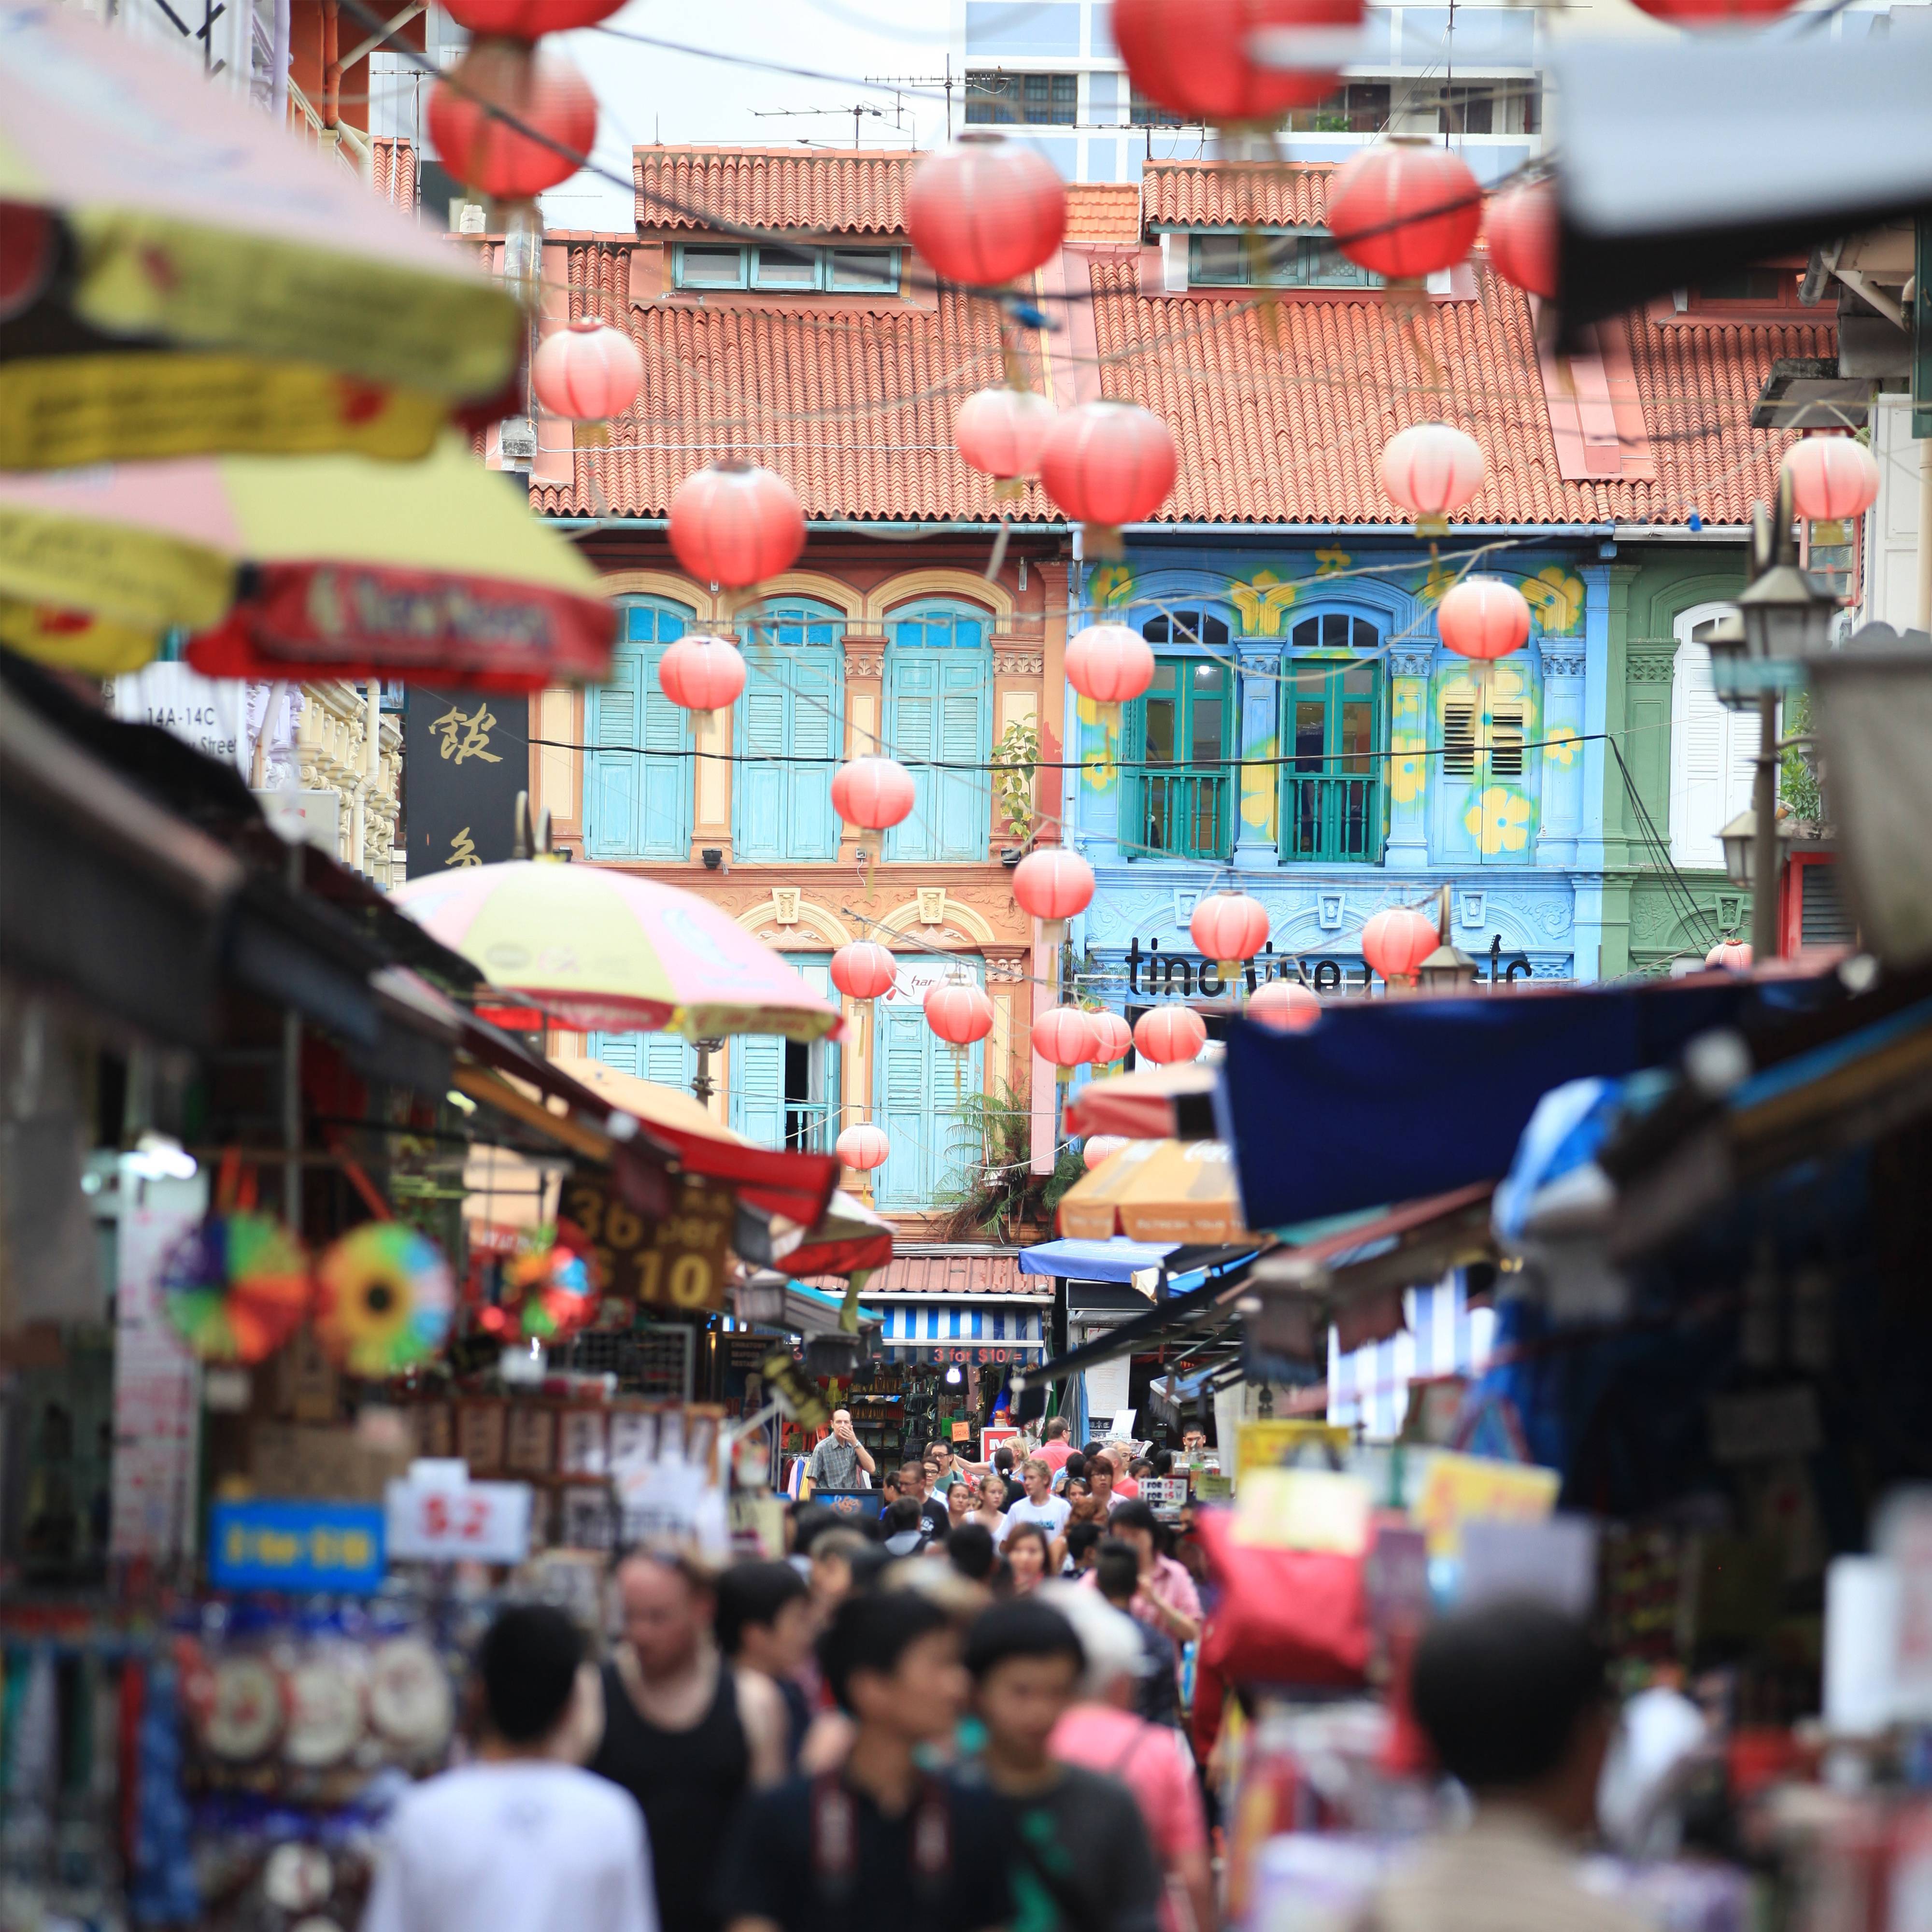 新加坡牛车水: 繁忙热闹的街市，布满了各式传统店铺、市集、新潮商店和咖啡厅